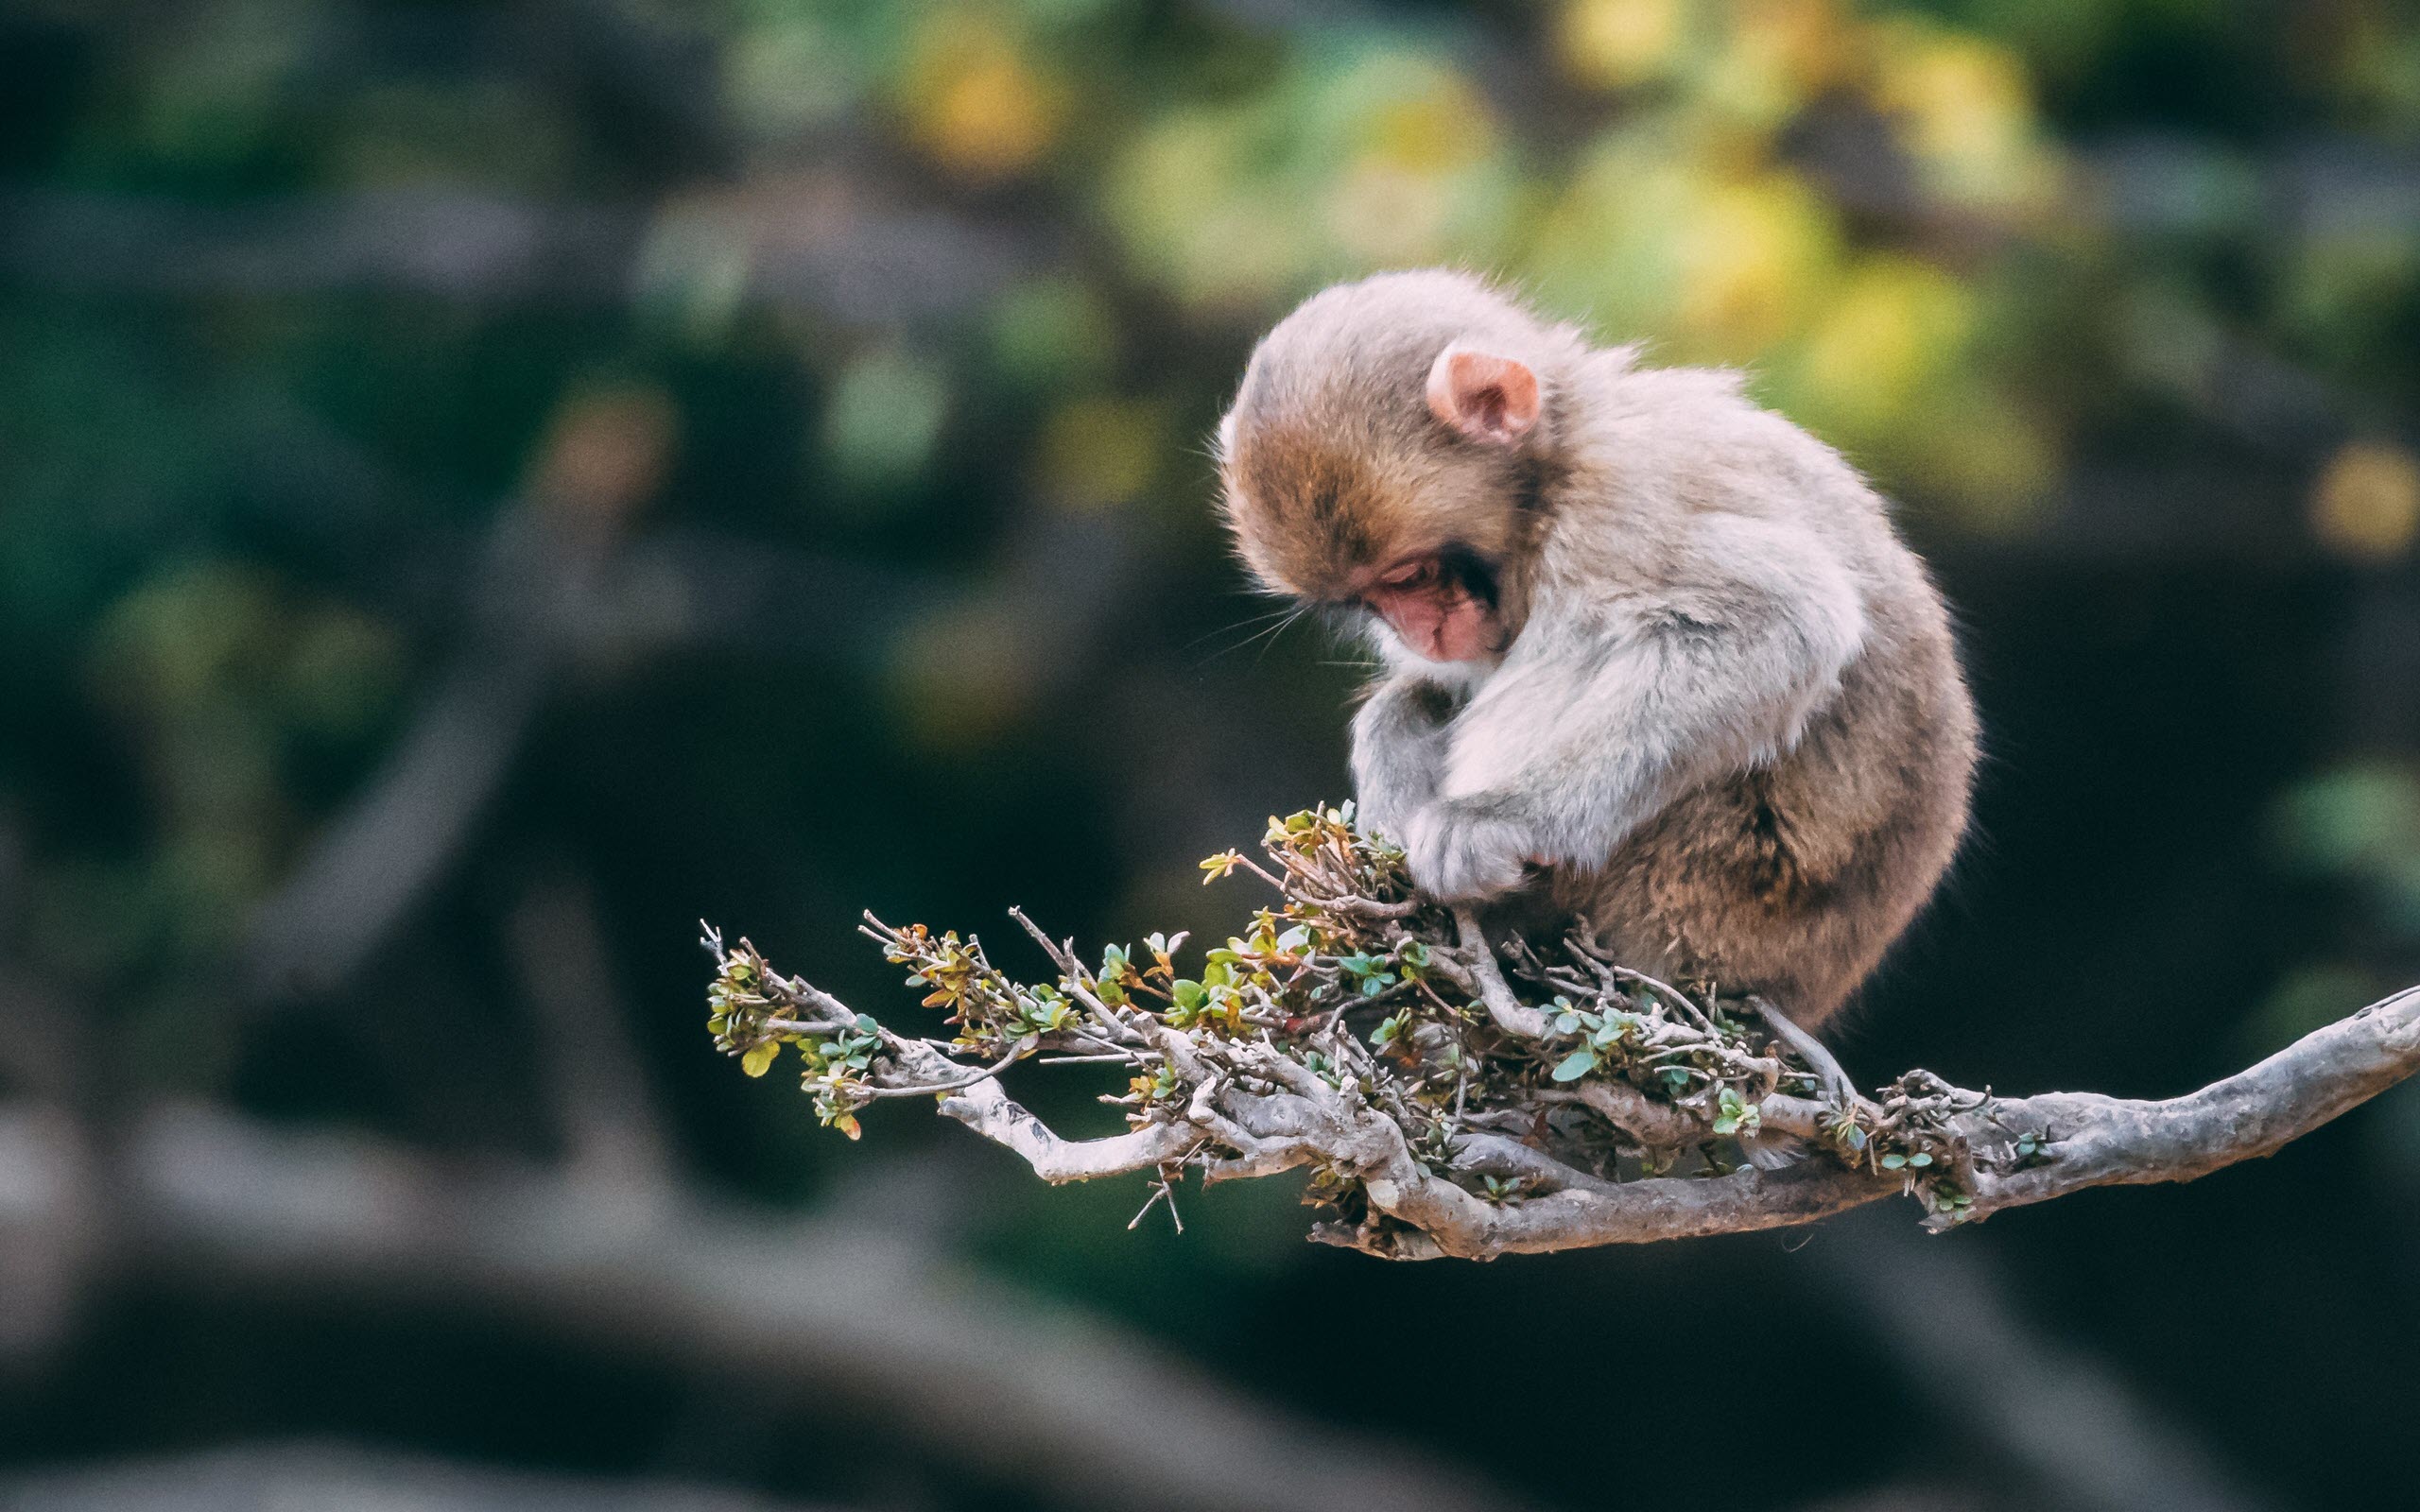 Những hình ảnh con khỉ tinh nghịch đẹp nhất thế giới | Seotrends.com.vn